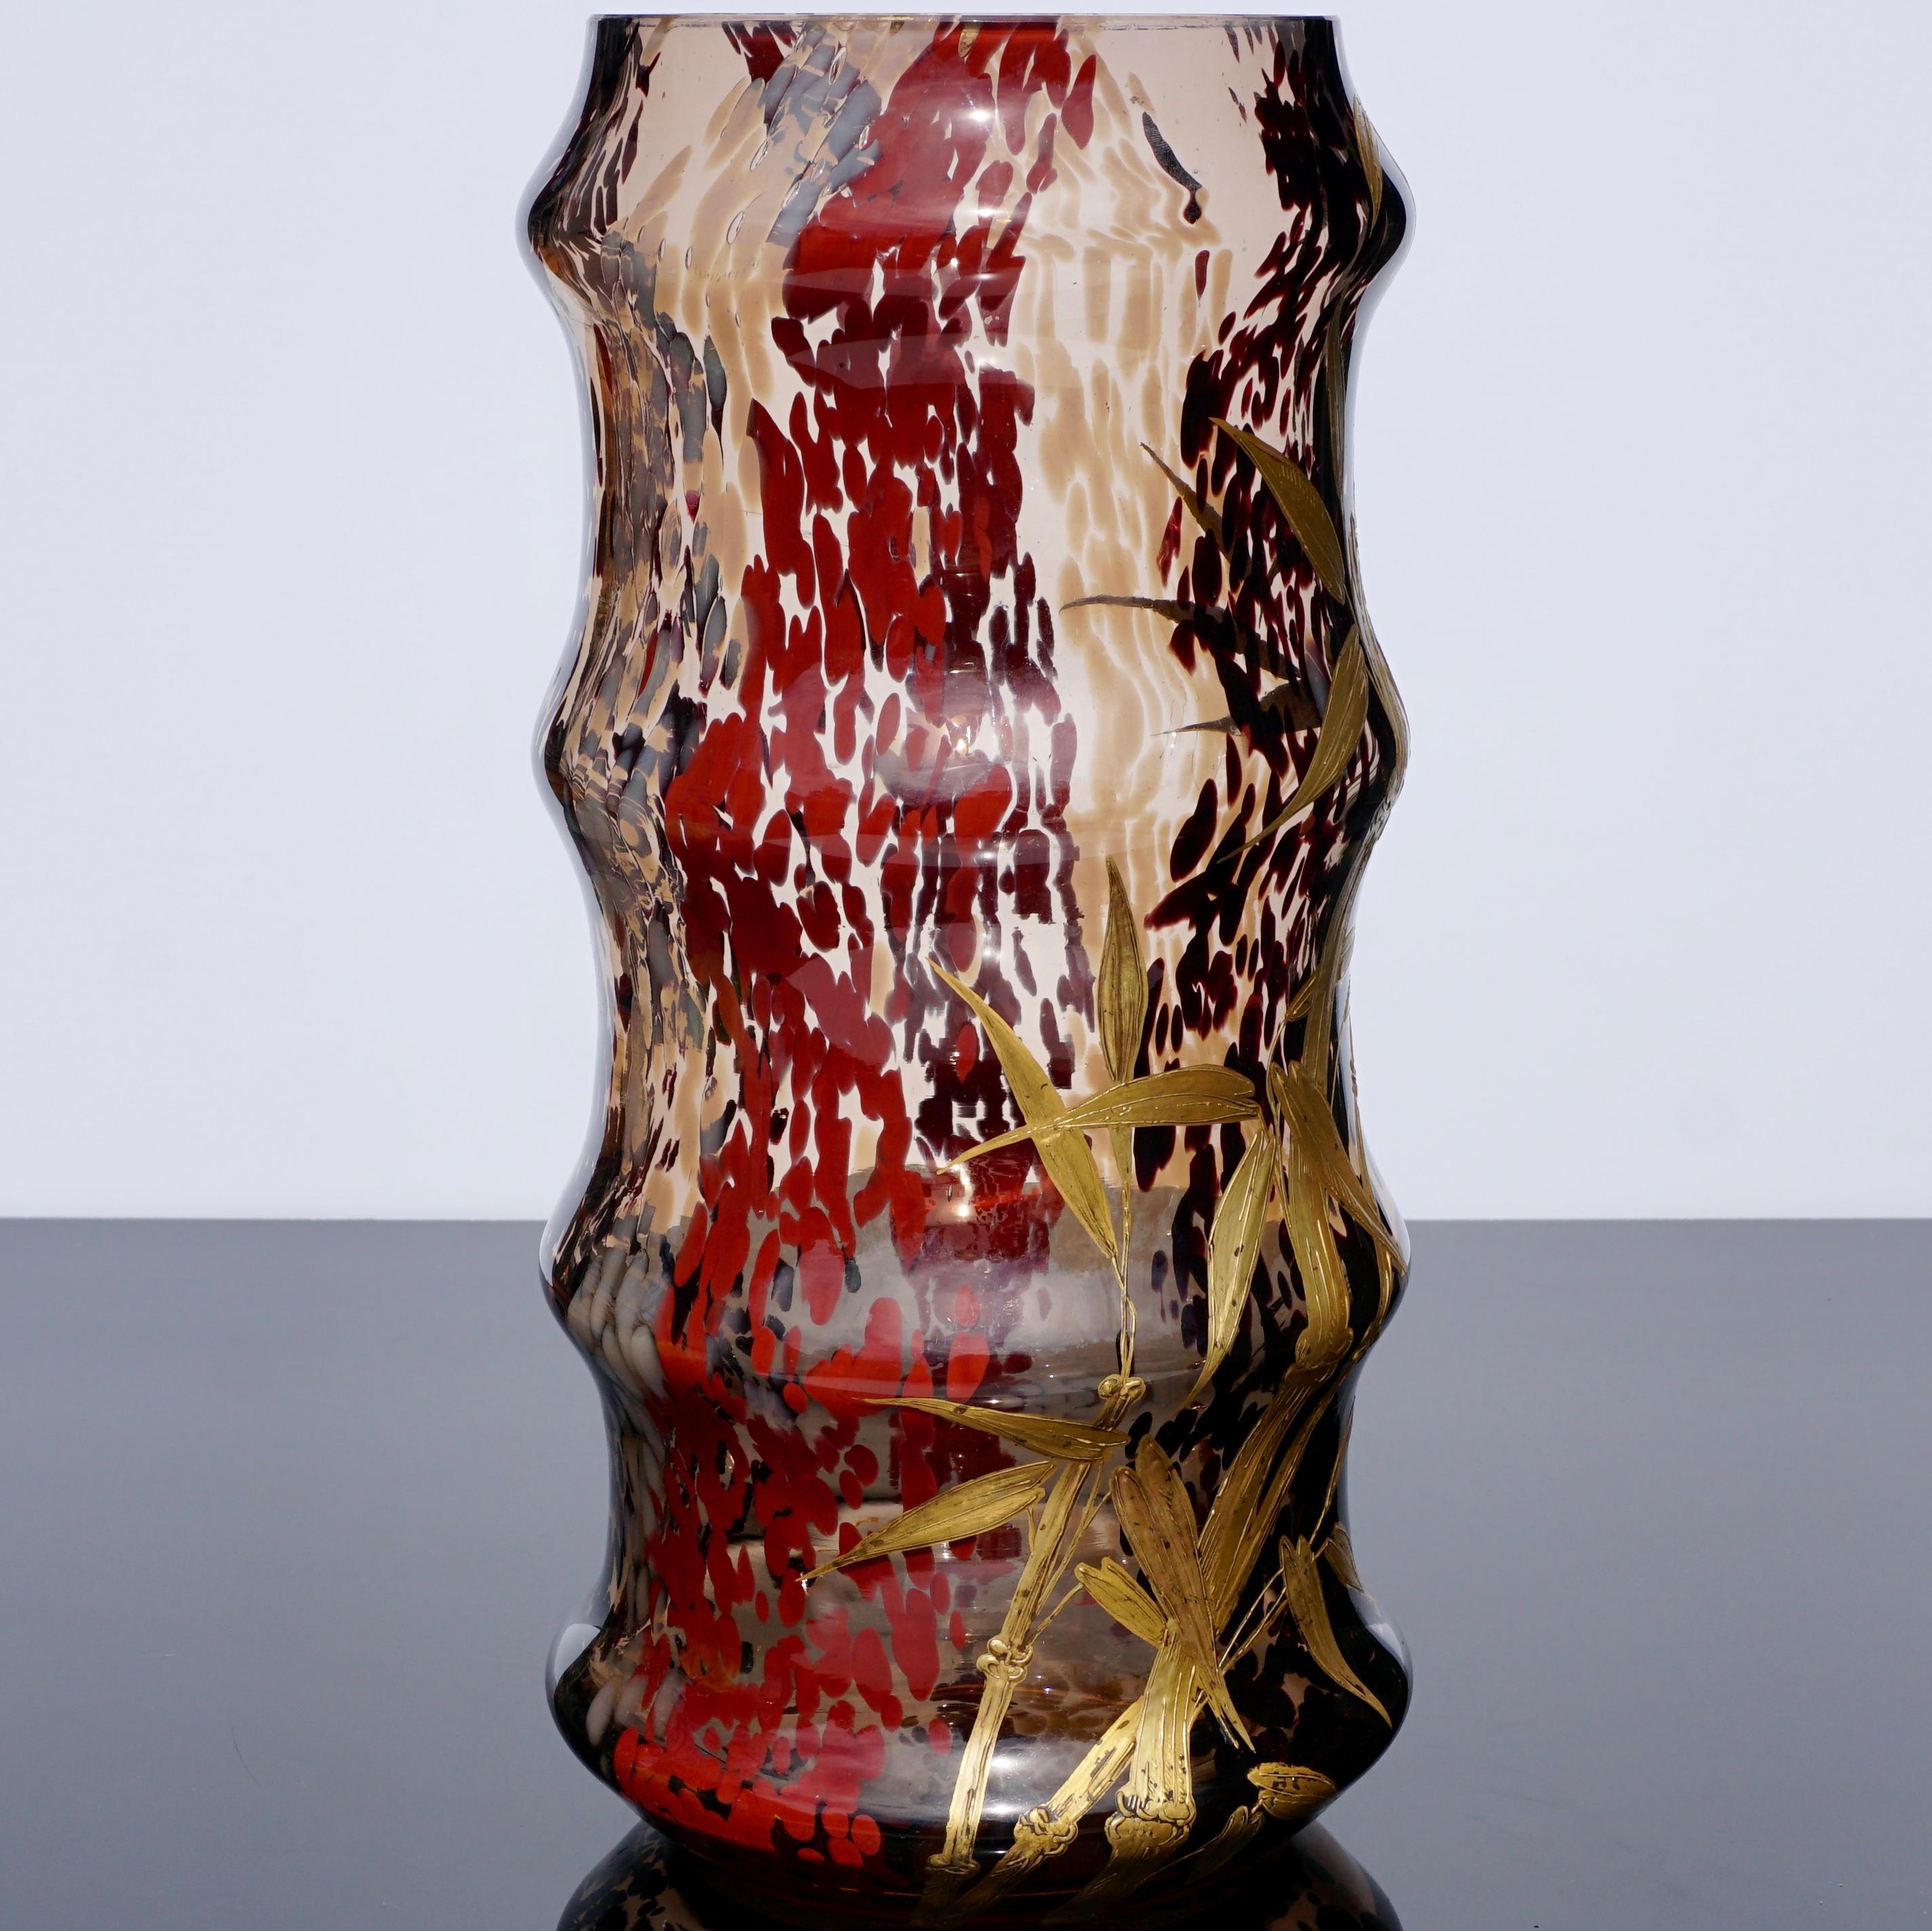 Diese Vasen sind verborgene Juwelen in der Welt der Glaskunst, da sie nie signiert sind. Hergestellt von Earnest Baptiste Leveille in Collaboration mit Eugene Rousseau in Paris, um 1900; diese Vase aus mundgeblasenem Glas mit gesprenkelten